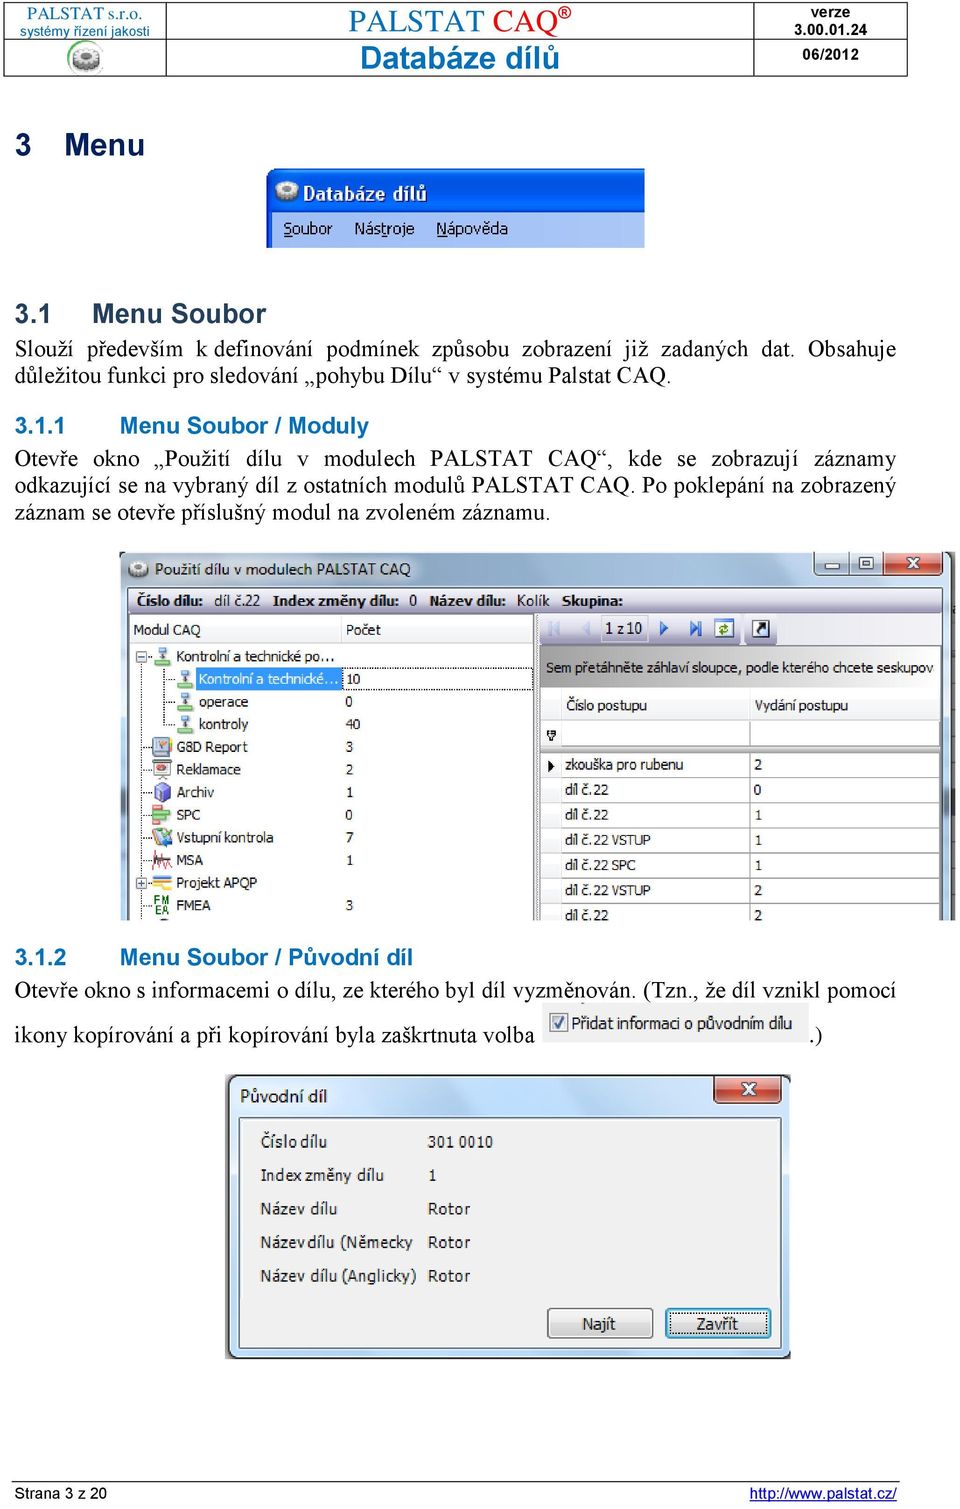 1 Menu Soubor / Moduly Otevře okno Použití dílu v modulech PALSTAT CAQ, kde se zobrazují záznamy odkazující se na vybraný díl z ostatních modulů PALSTAT